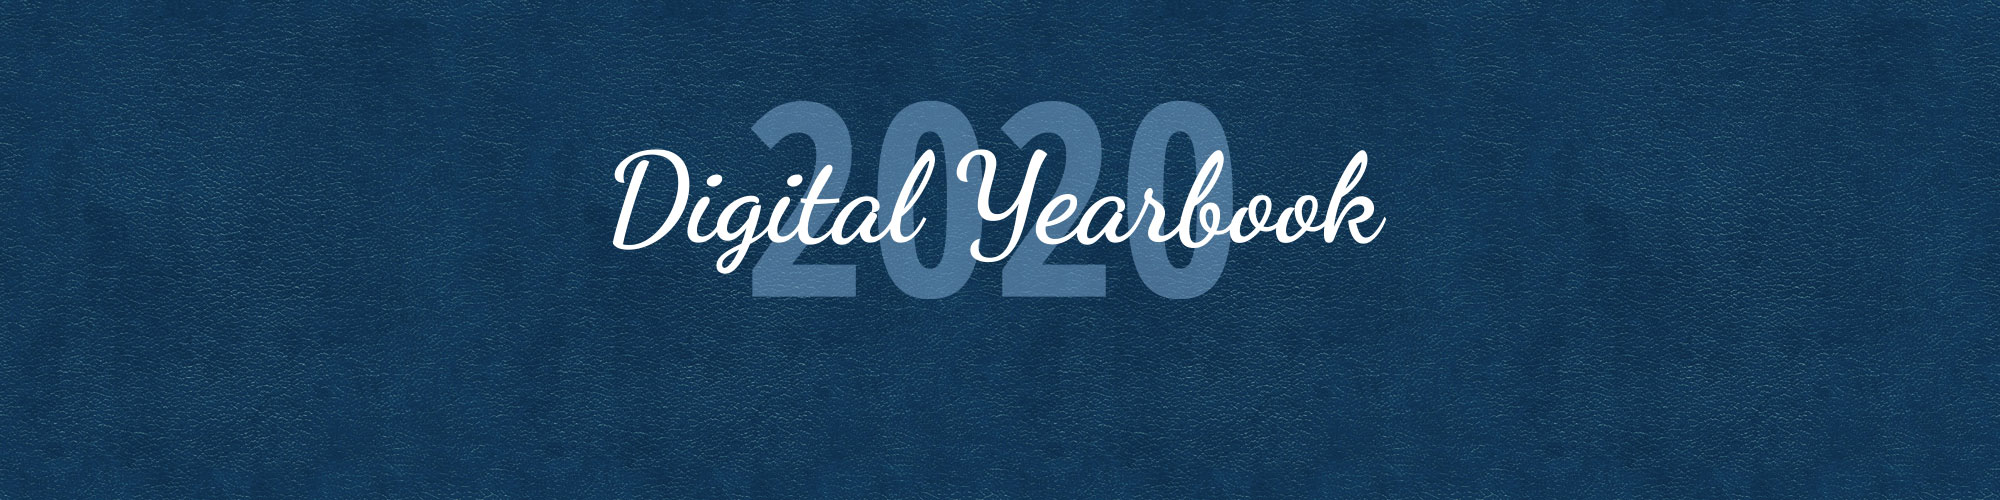 2020 Digital Yearbook